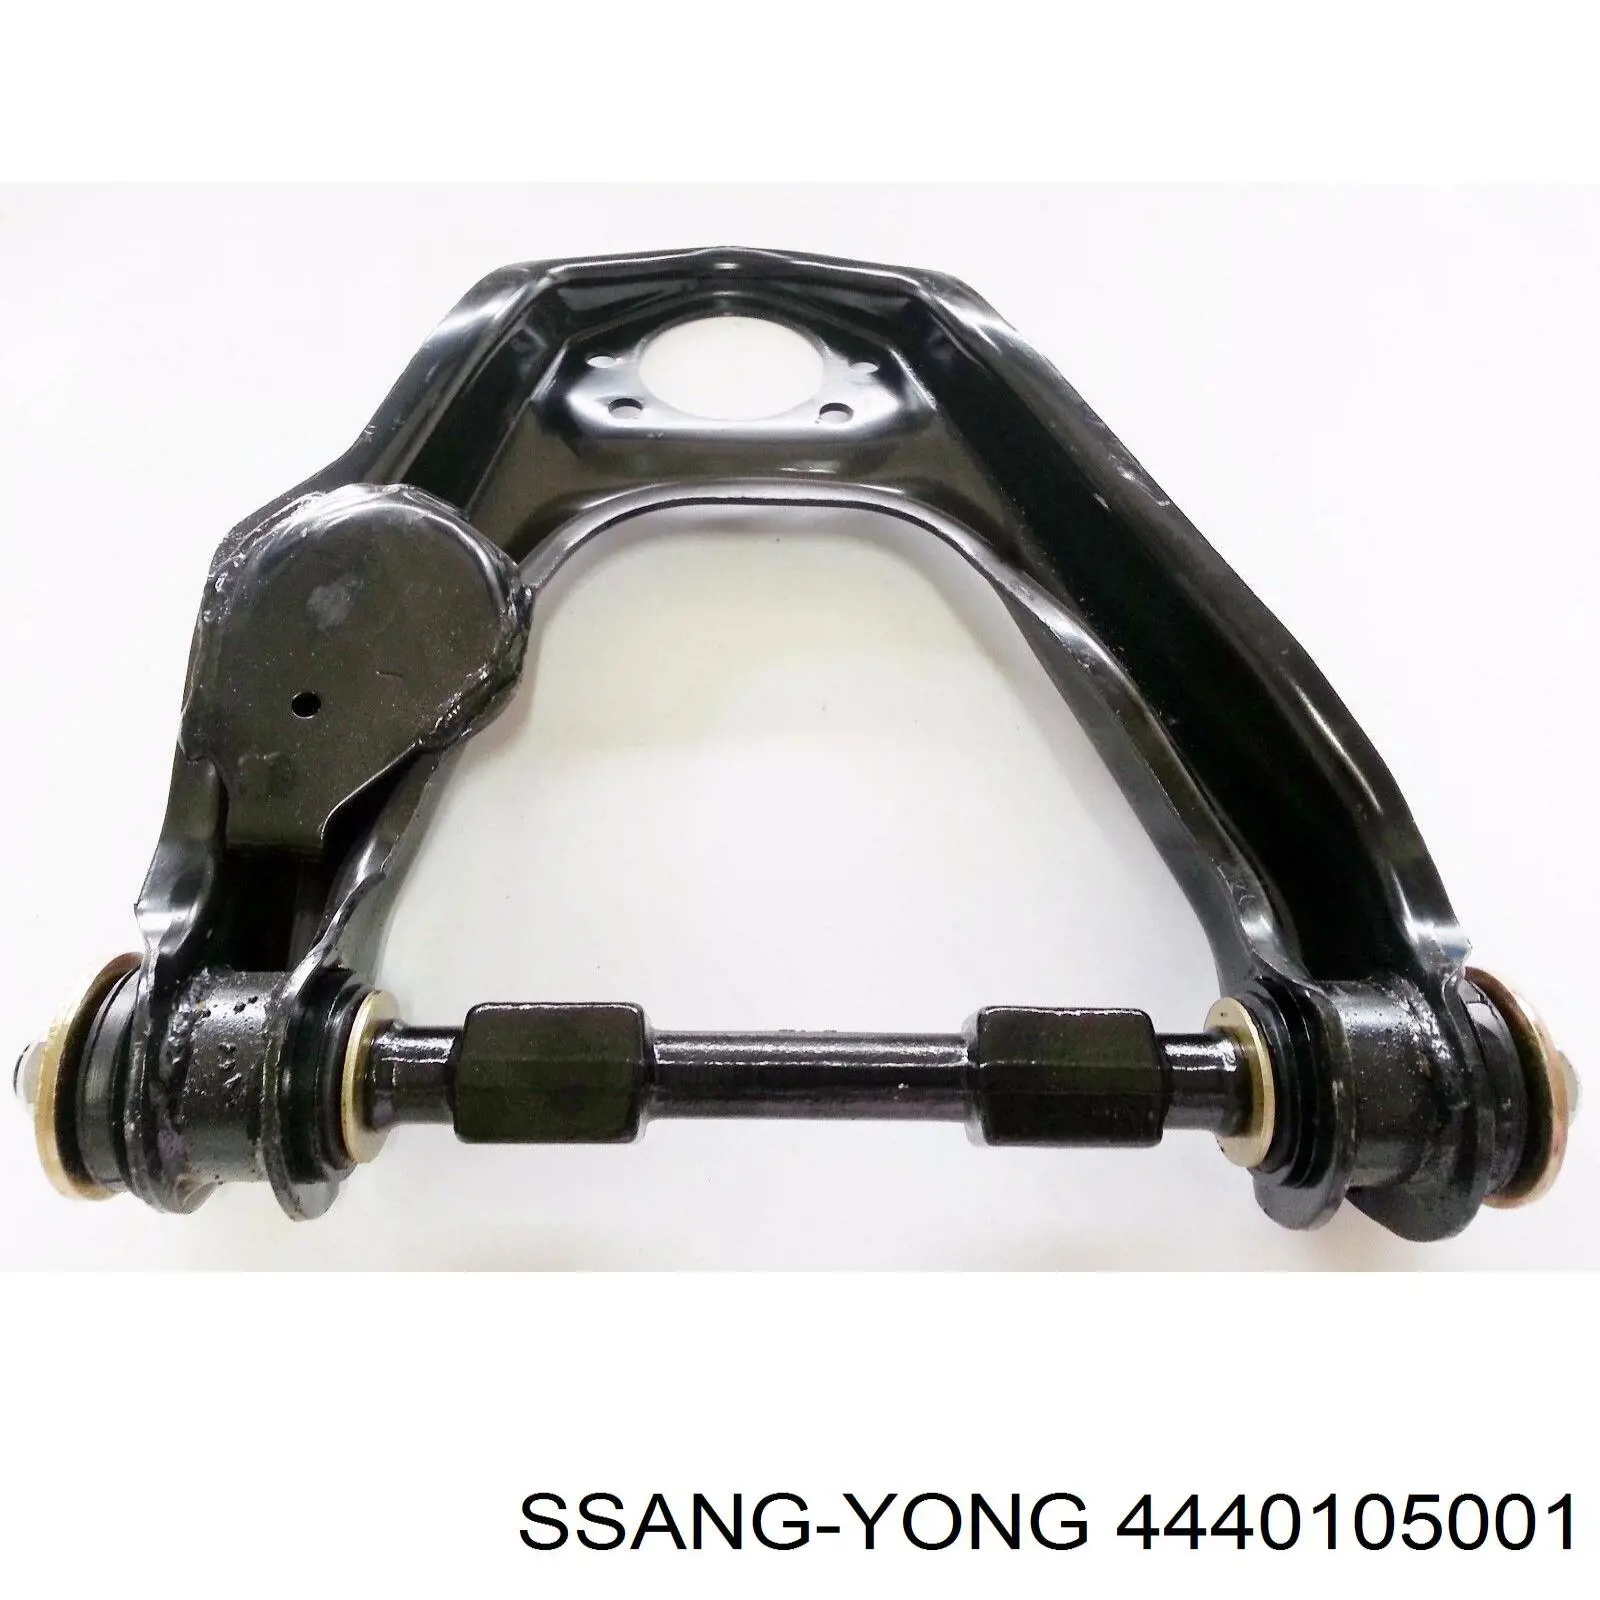 4440105001 Ssang Yong barra oscilante, suspensión de ruedas delantera, superior izquierda